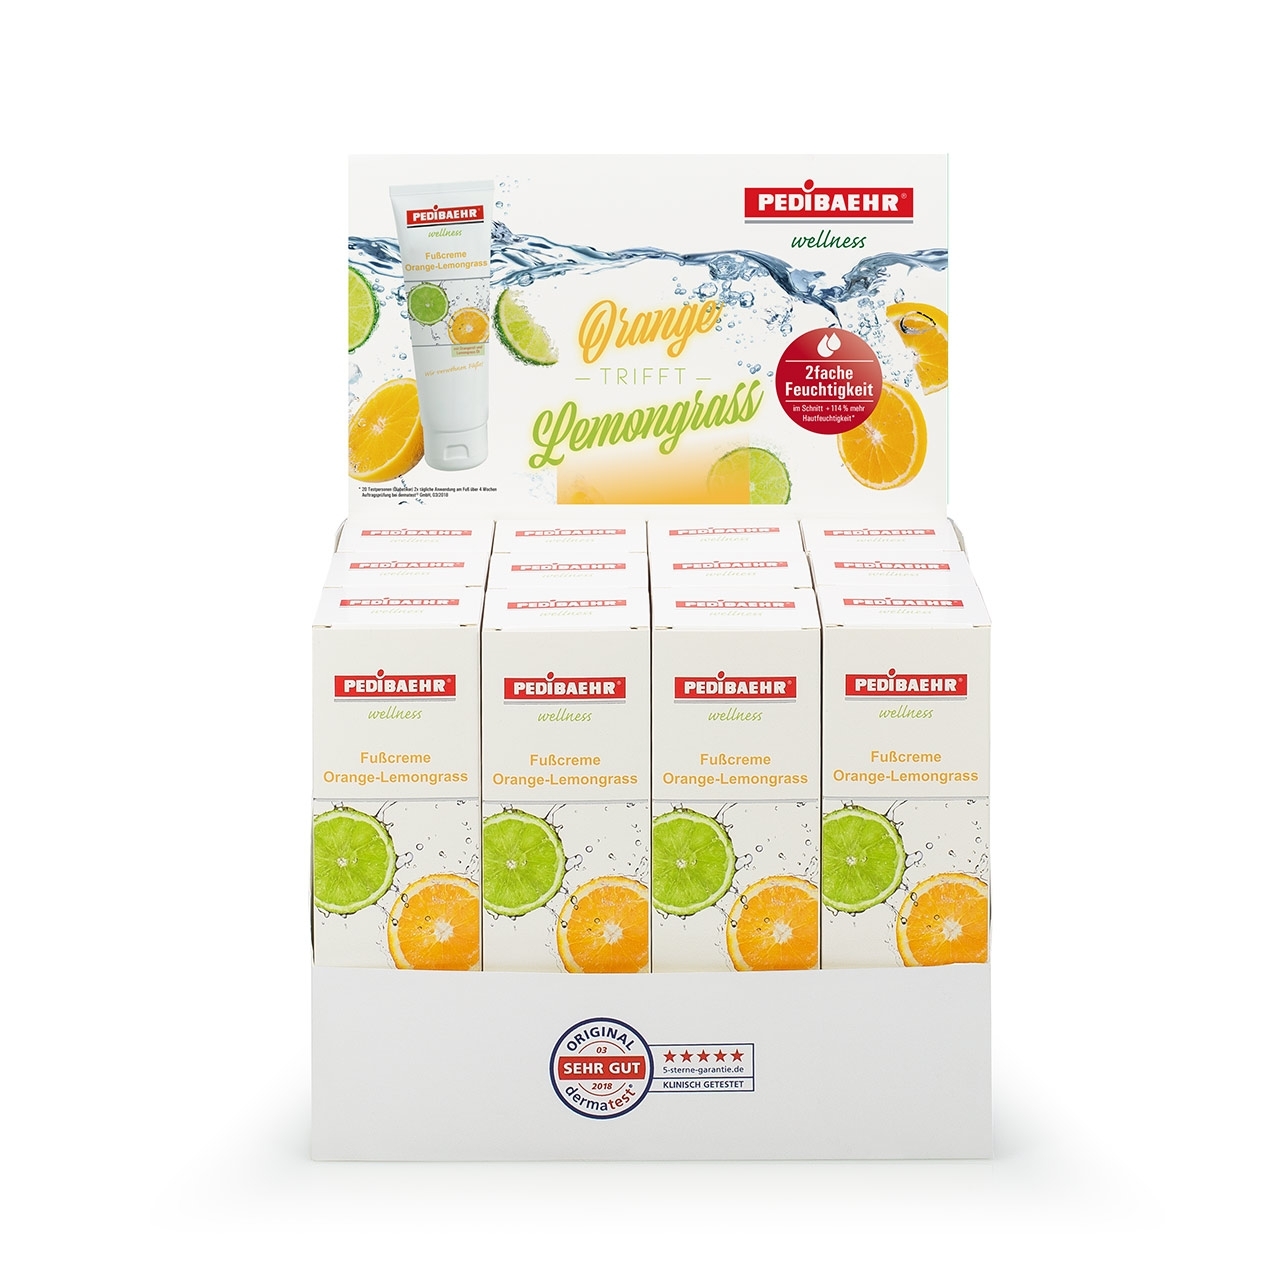 PEDIBAEHR Aktionspaket Fußcreme Orange/Lemongrass 125 ml